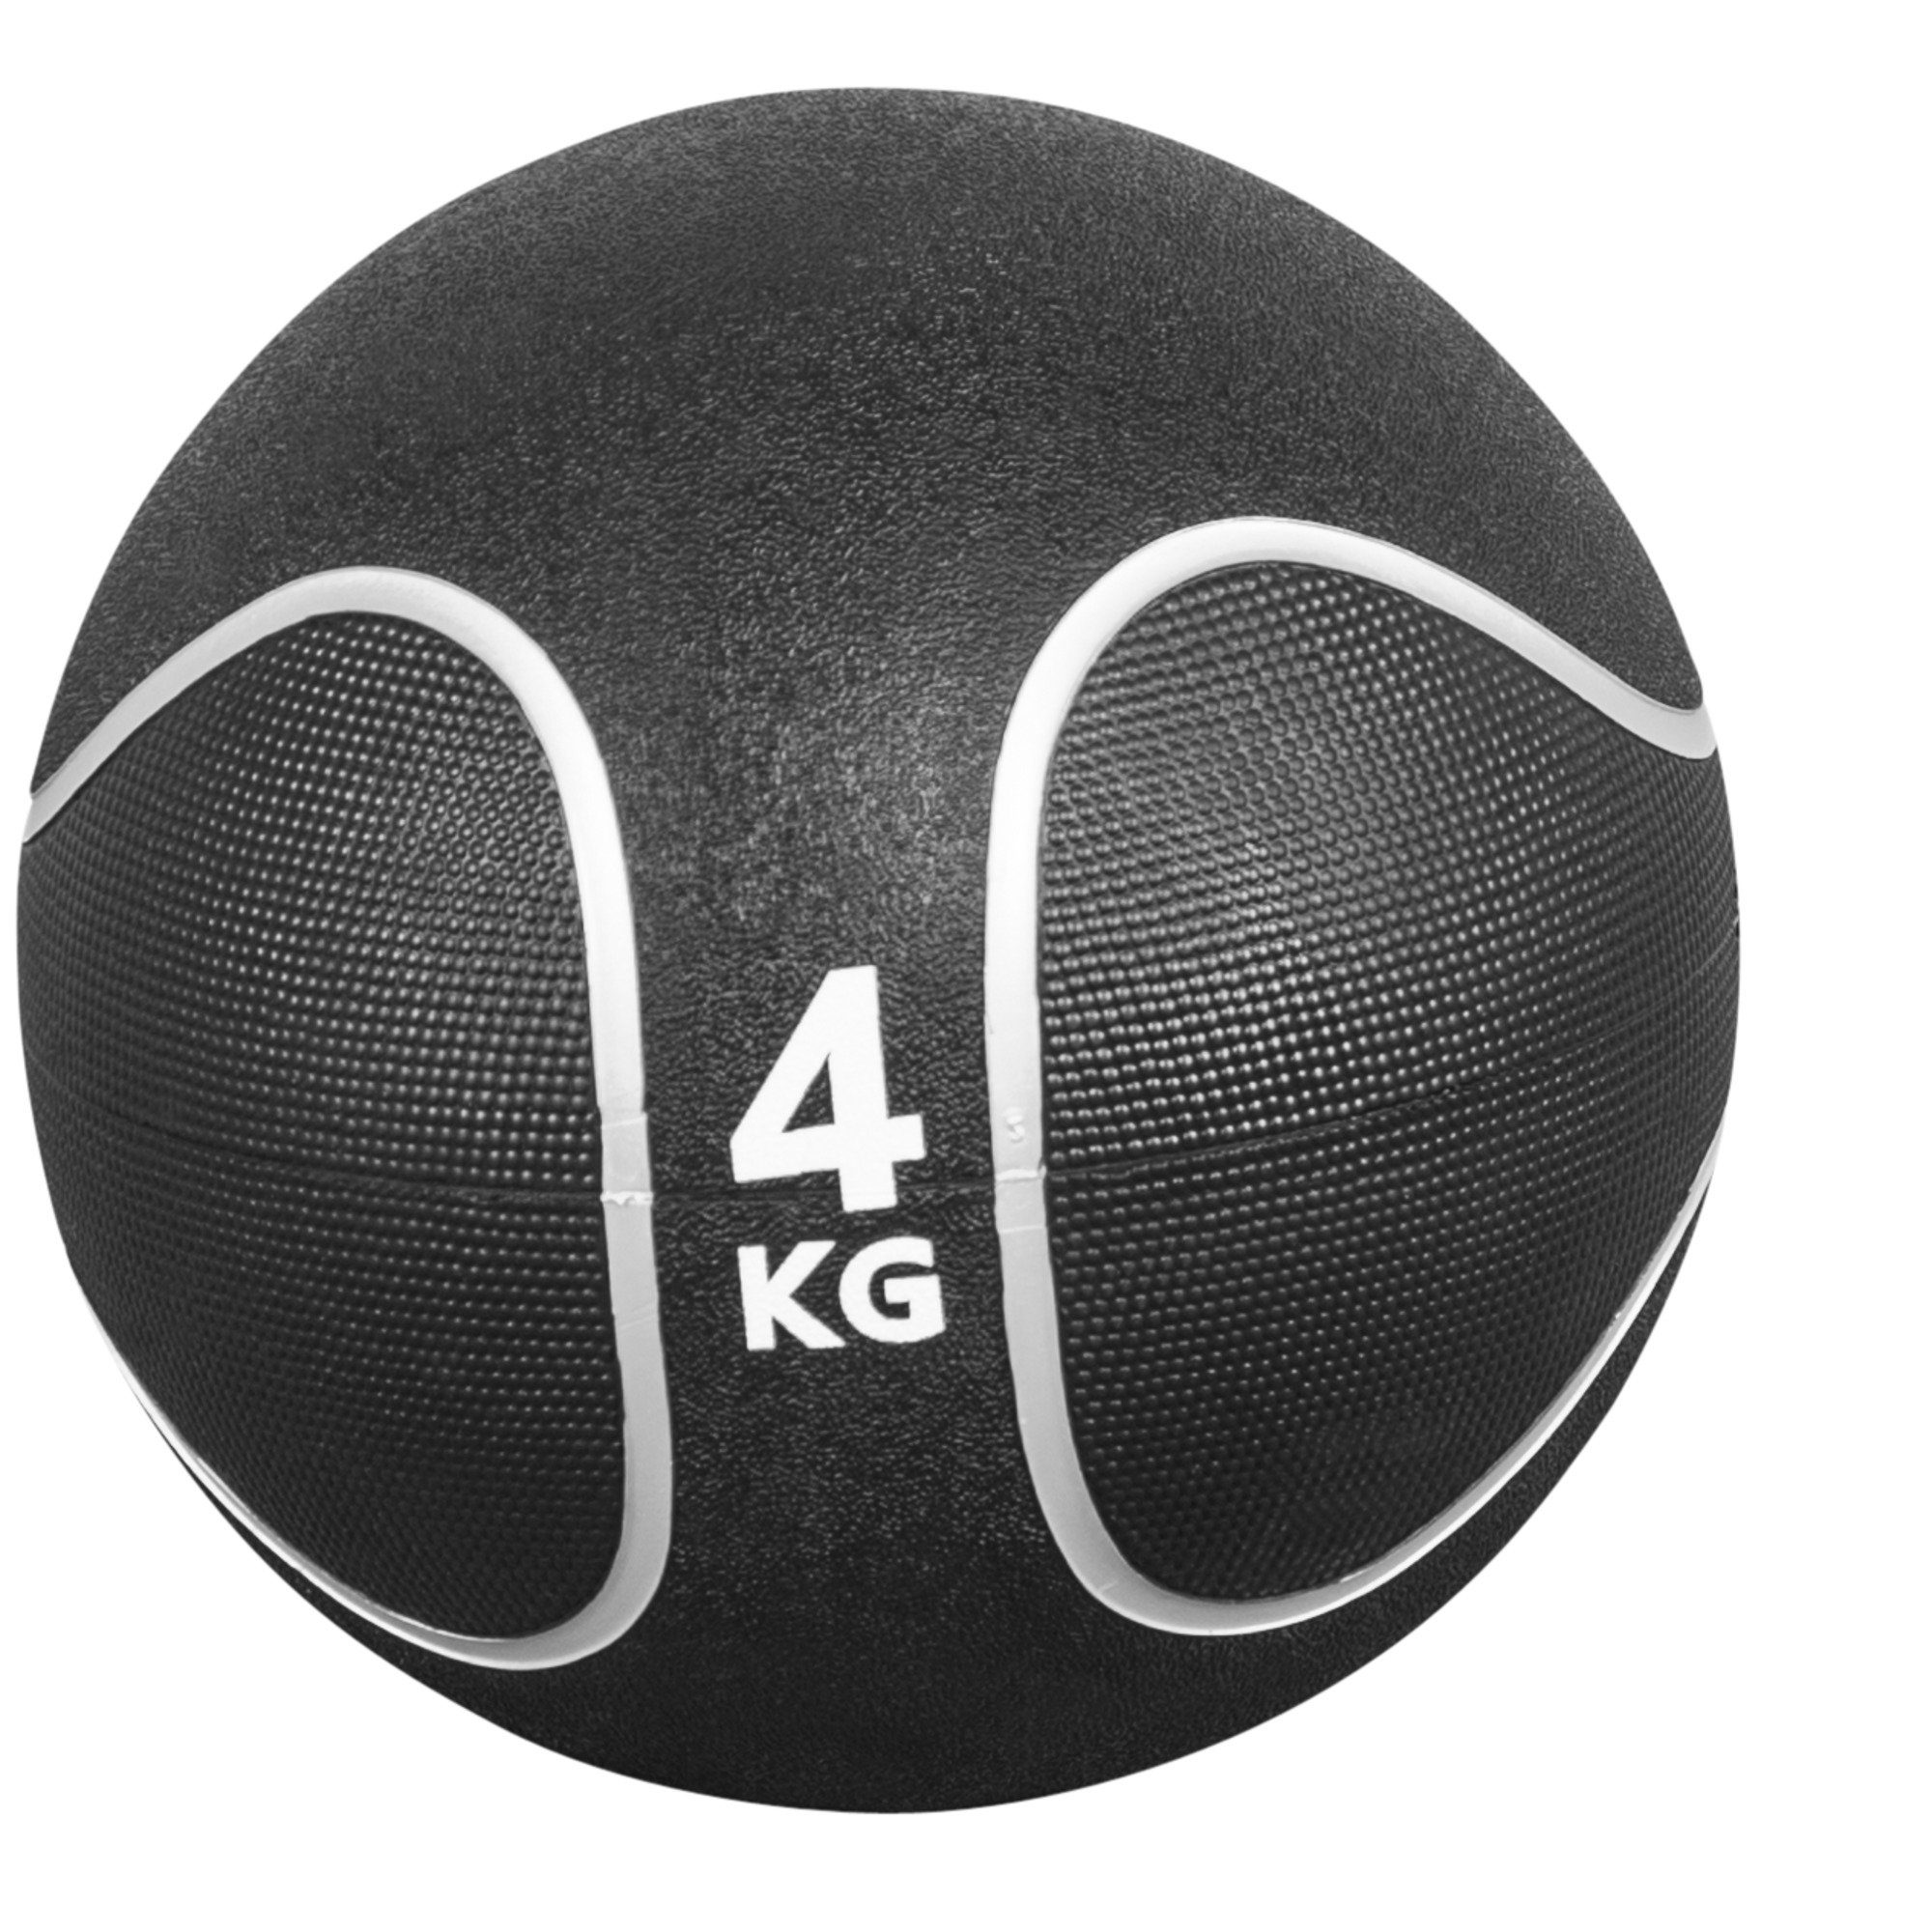 GORILLA Medizinball Fitnessball 29 oder KG SPORTS Set, / rutschfest, cm, 15 23 Ø Gummi, % SET aus Einzeln